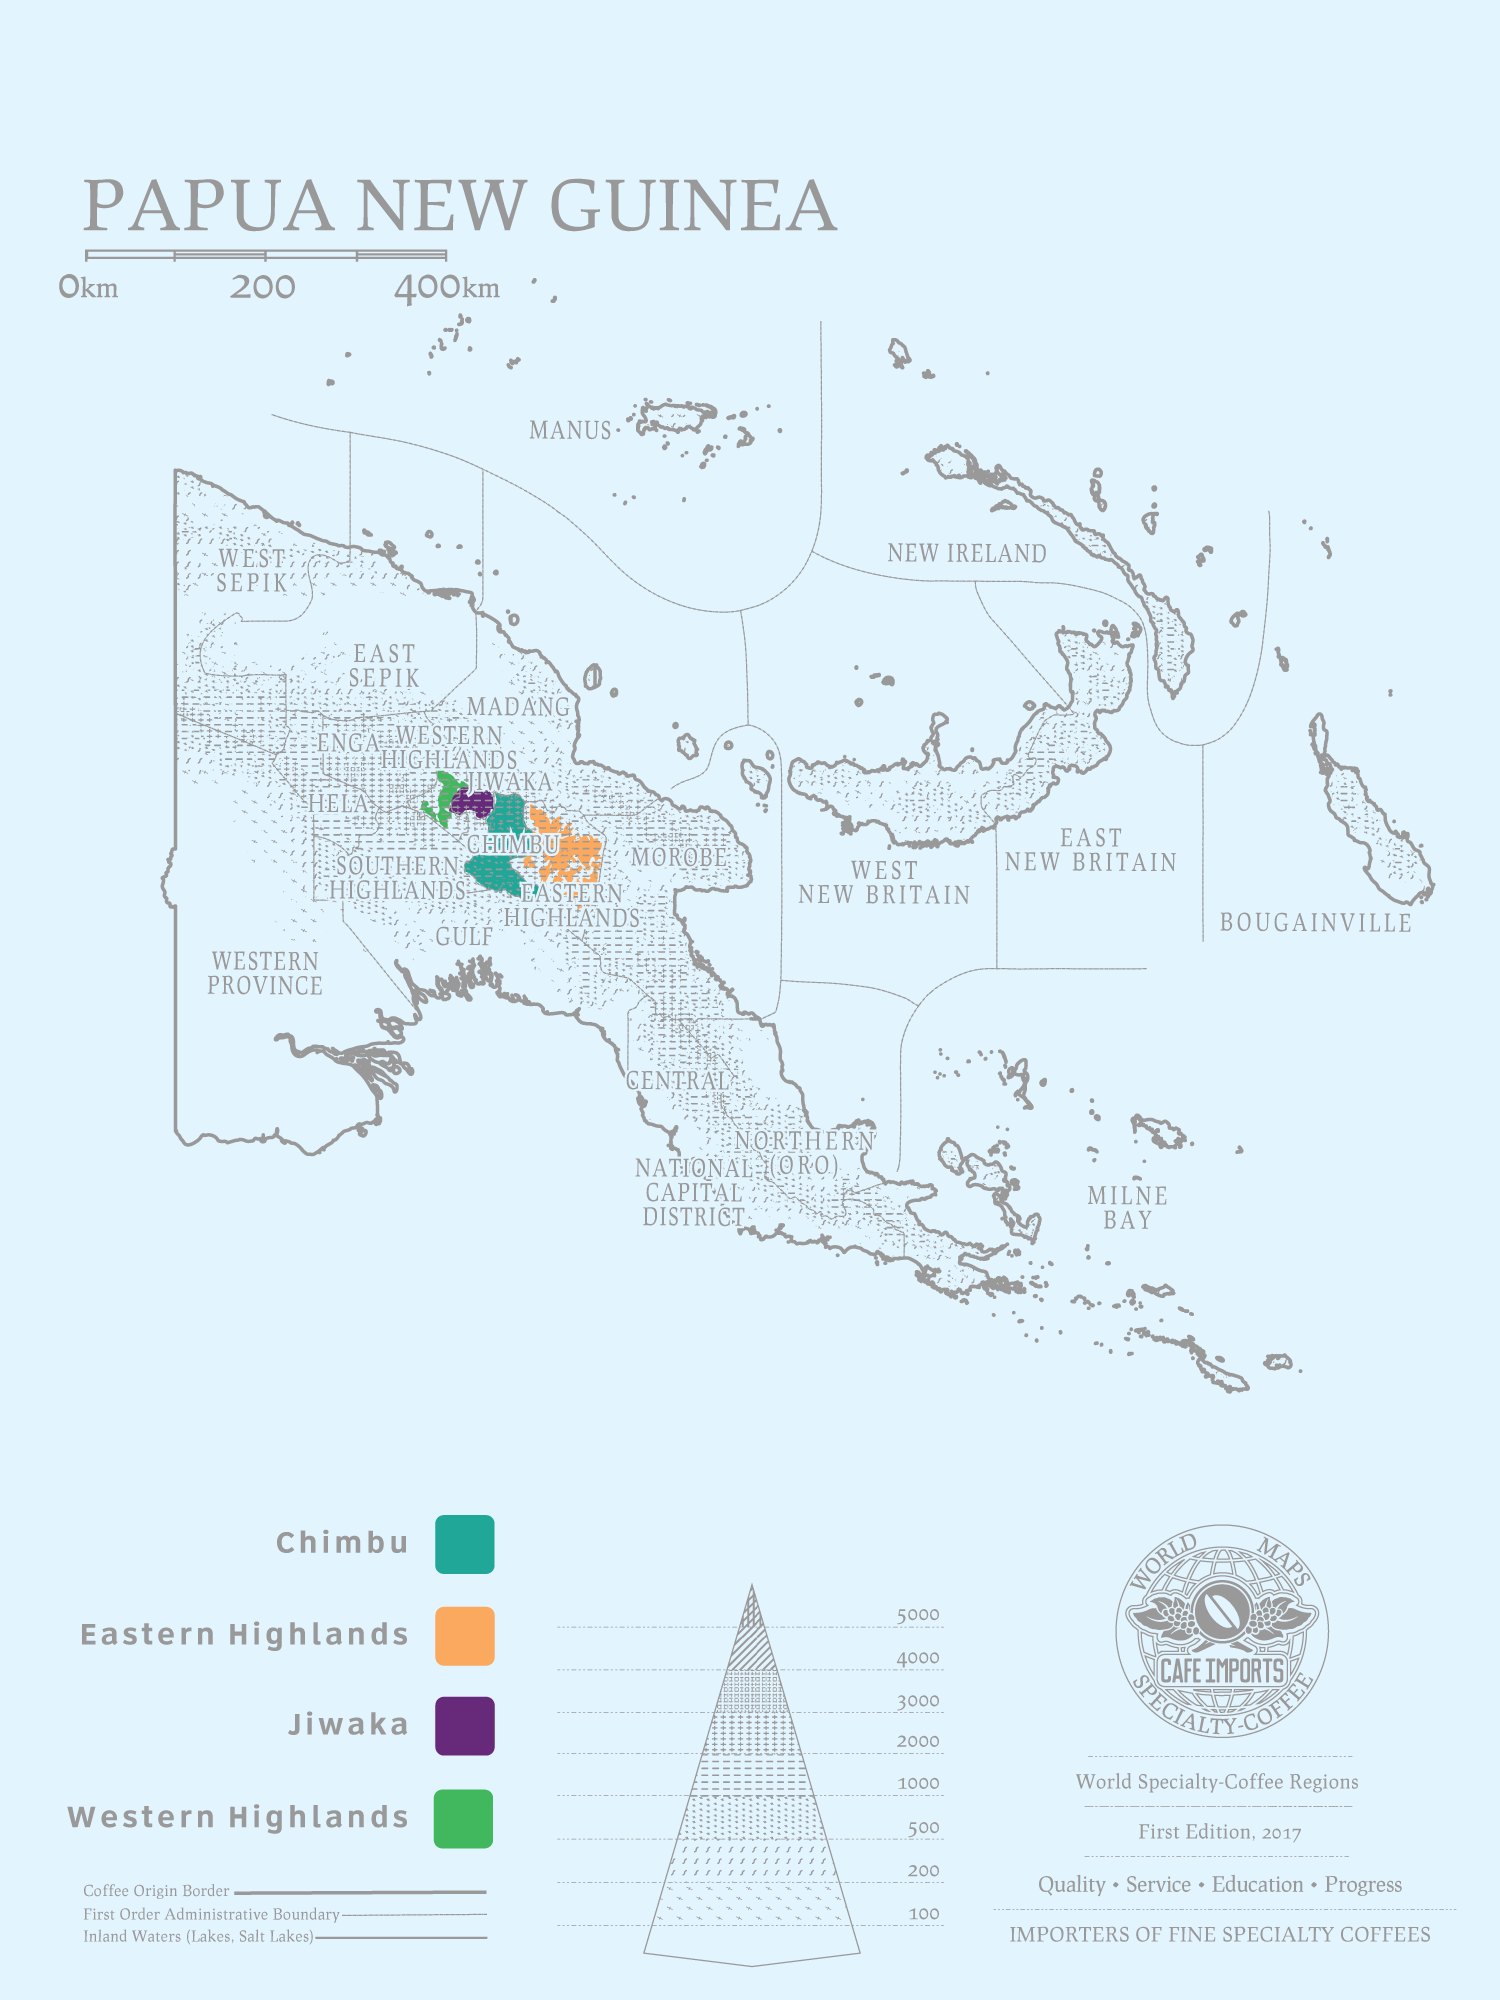 Puapua New Guinea 2